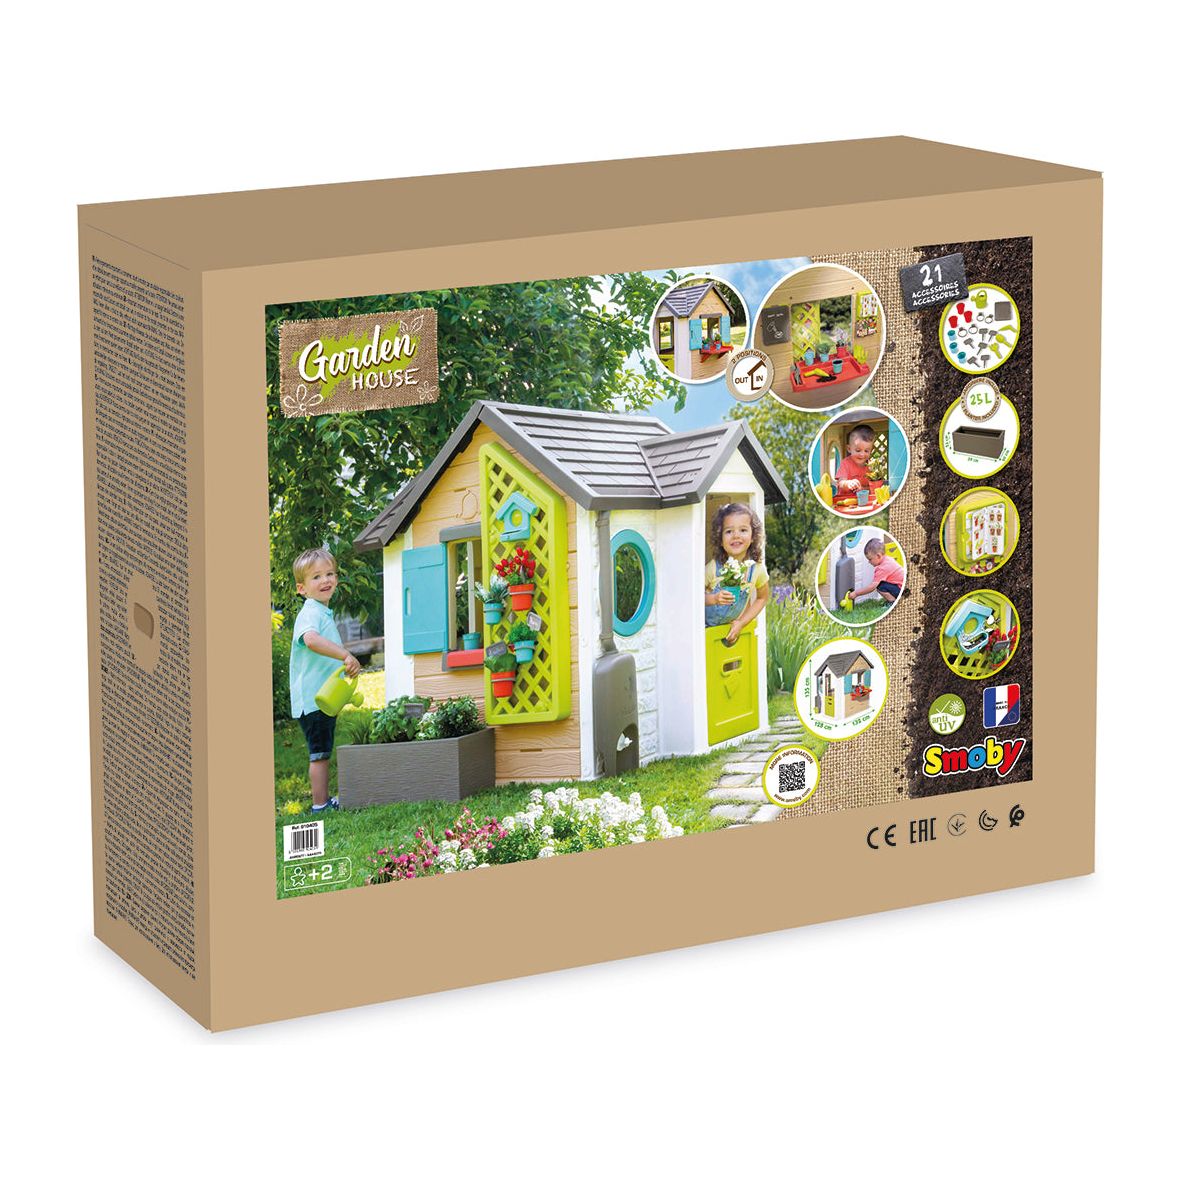 Smoby Garden House box